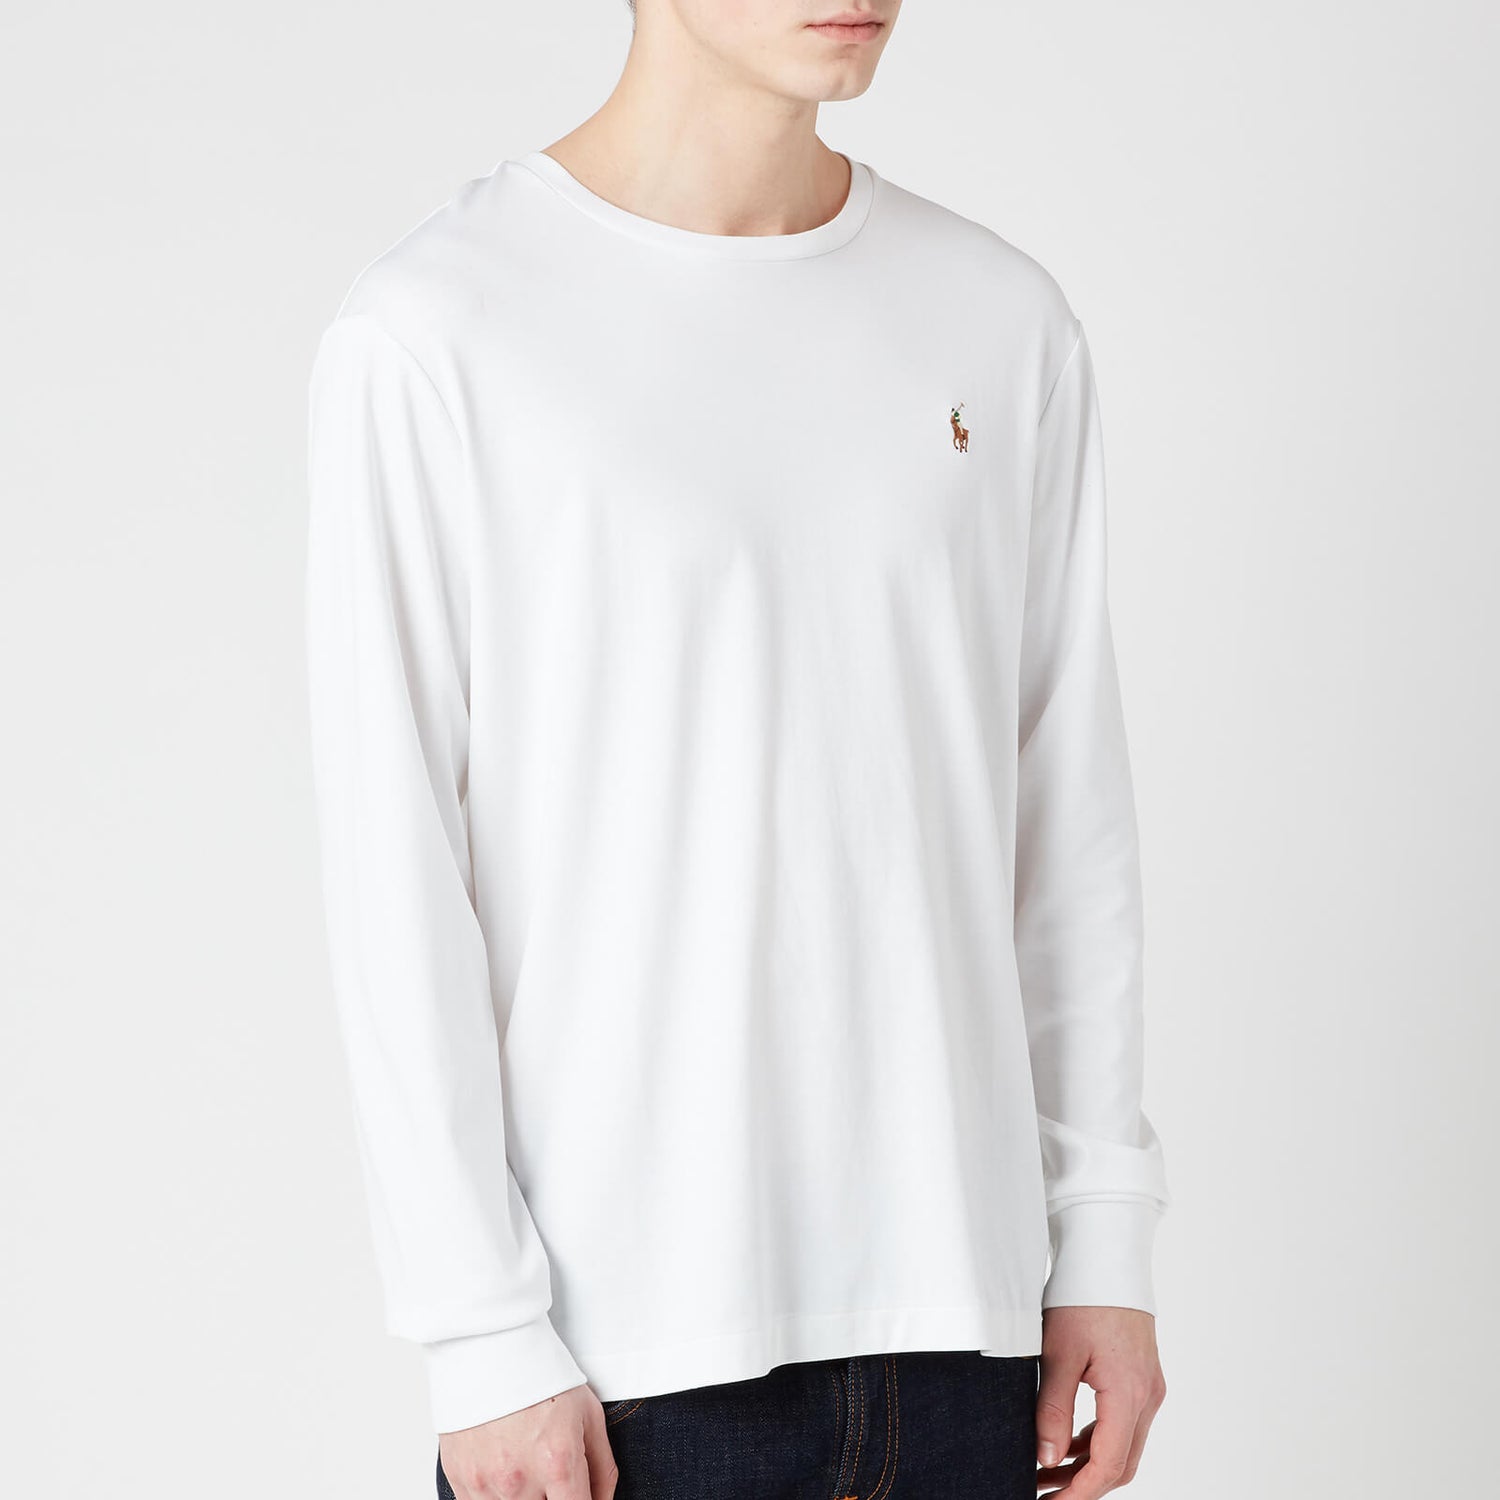 Polo Ralph Lauren Men's Custom Slim Fit Long Sleeve T-Shirt - White - S